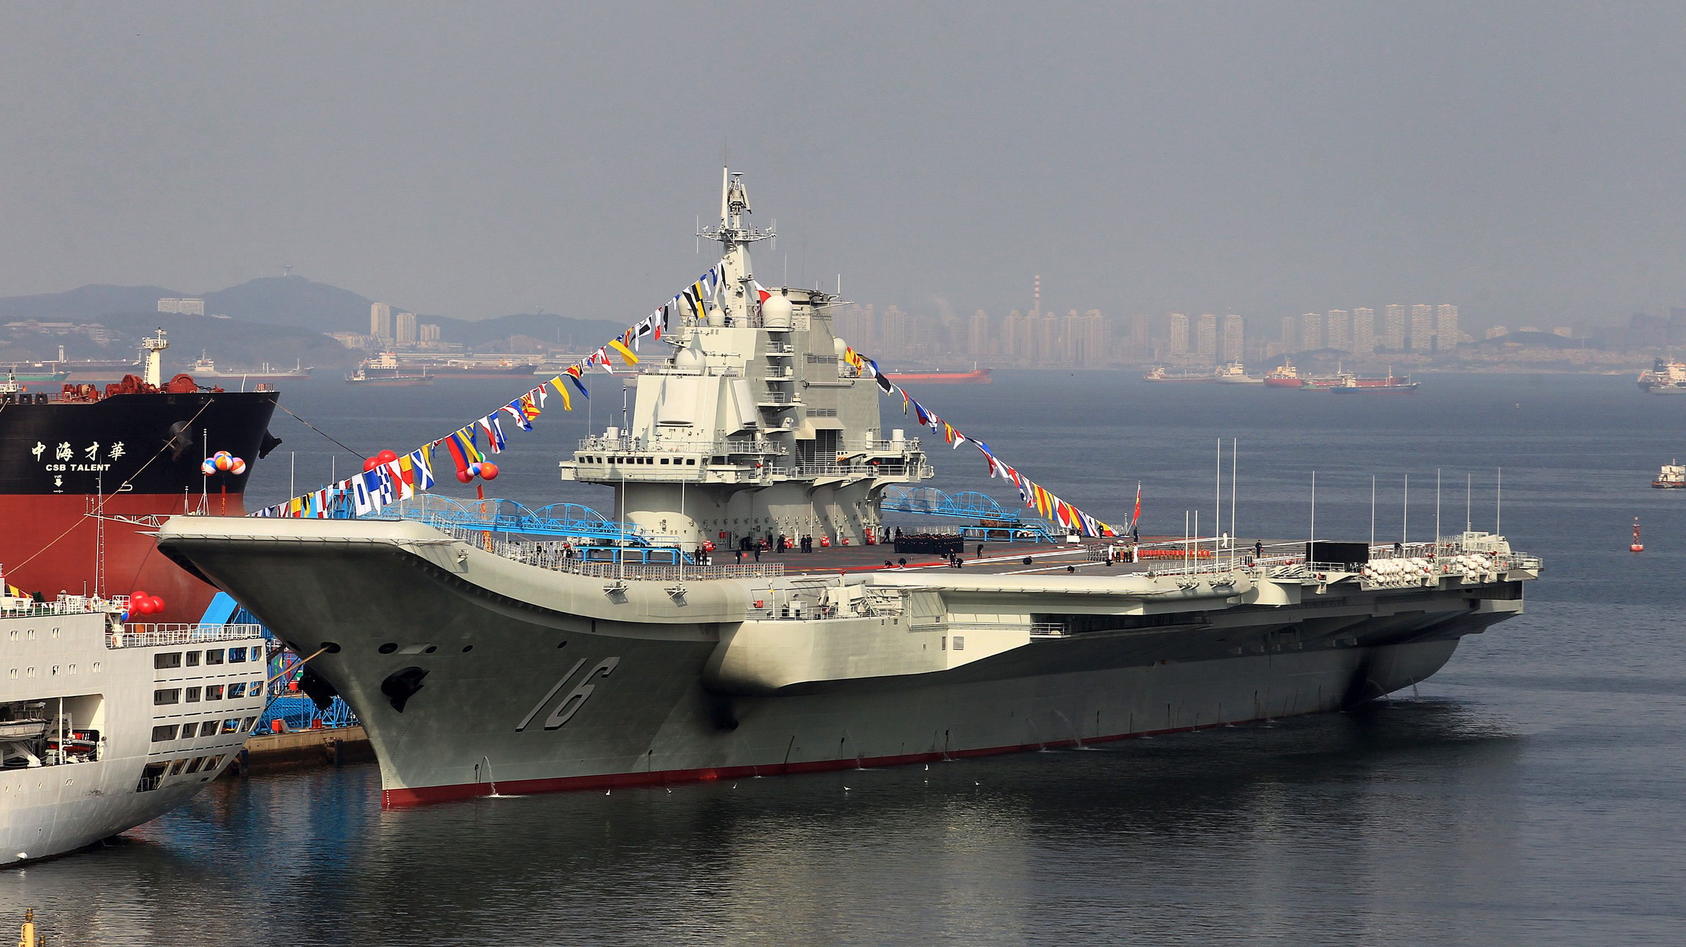 ARCHIV - Chinas erster Flugzeugträger «Liaoning» liegt in Dalian (China) am 24.09.2012 an der Pier. Die Länder Asiens hätten erstmals mehr Geld für Rüstung ausgegeben als die Nato-Länder in Europa, heißt es im neuen Bericht des Londoner Institutes fü